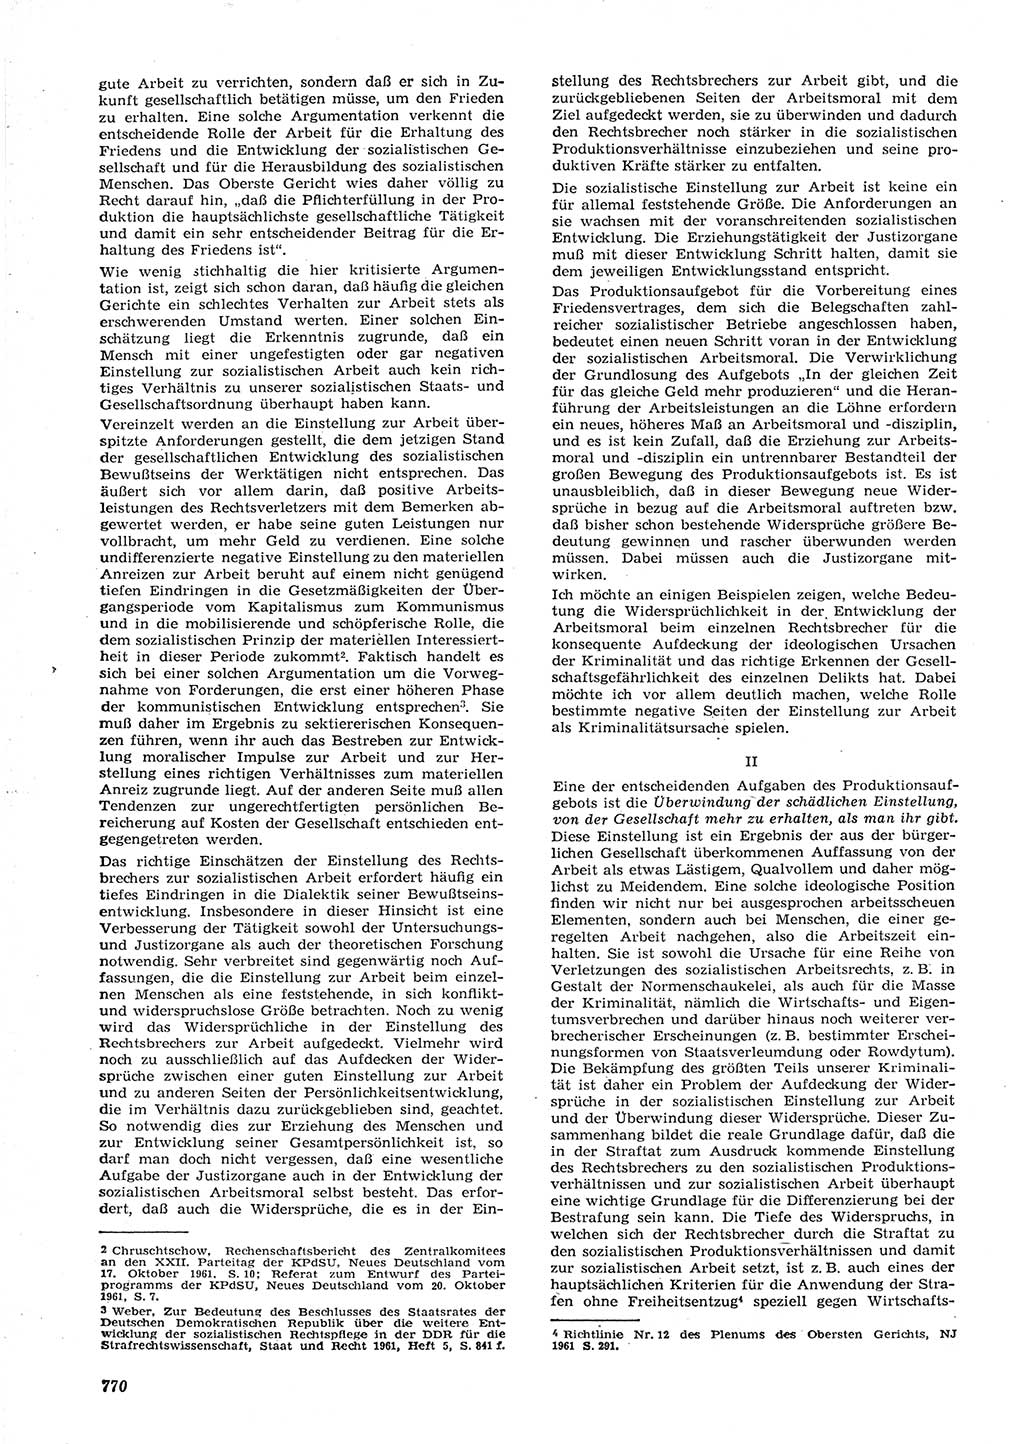 Neue Justiz (NJ), Zeitschrift für Recht und Rechtswissenschaft [Deutsche Demokratische Republik (DDR)], 15. Jahrgang 1961, Seite 770 (NJ DDR 1961, S. 770)